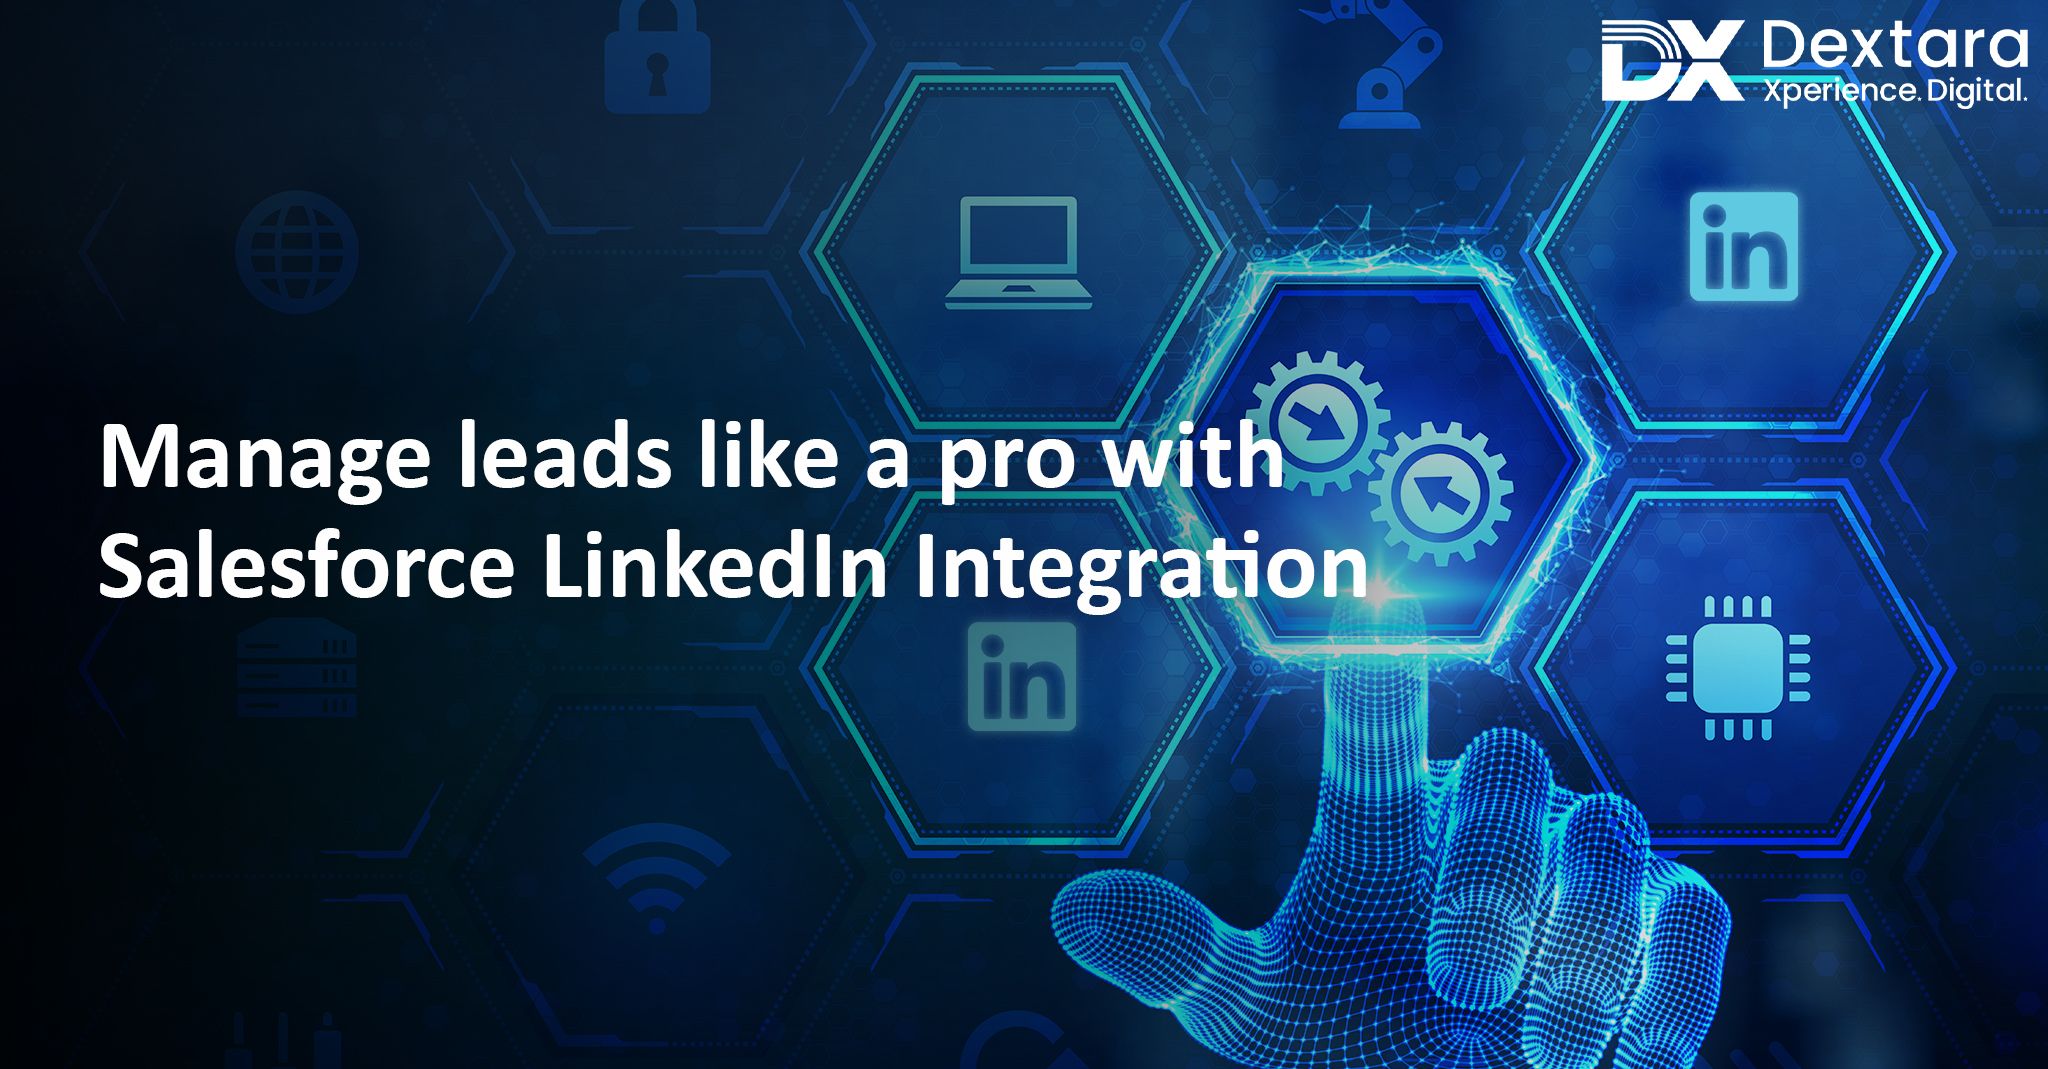 Salesforce LinkedIn Integration